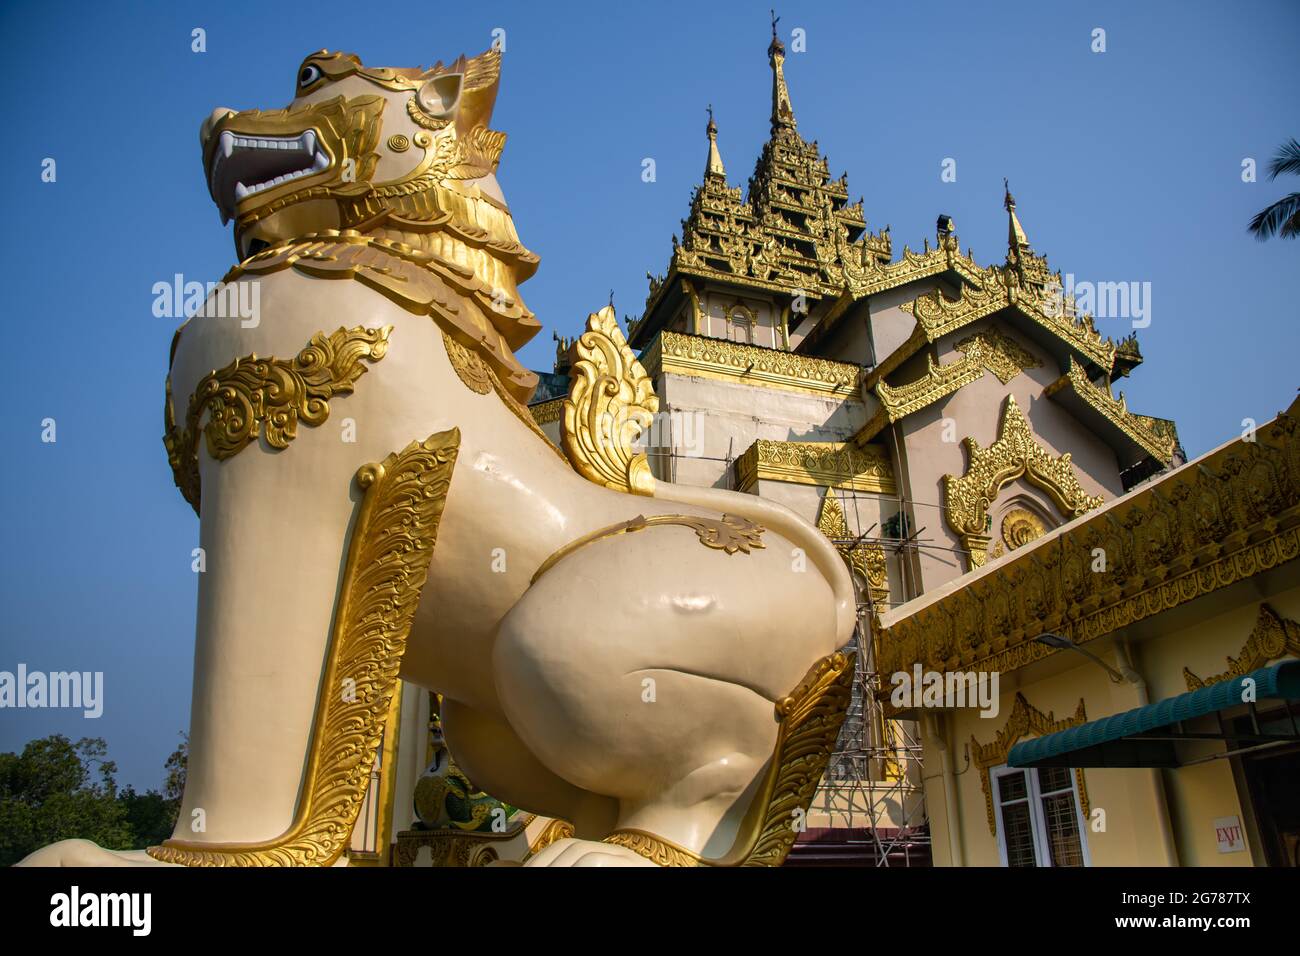 El chino gigante (leogryph) guarda la entrada a la Pagoda Shwedagon. Estatua dorada que se asemeja a una criatura en forma de león con un cielo azul claro Foto de stock